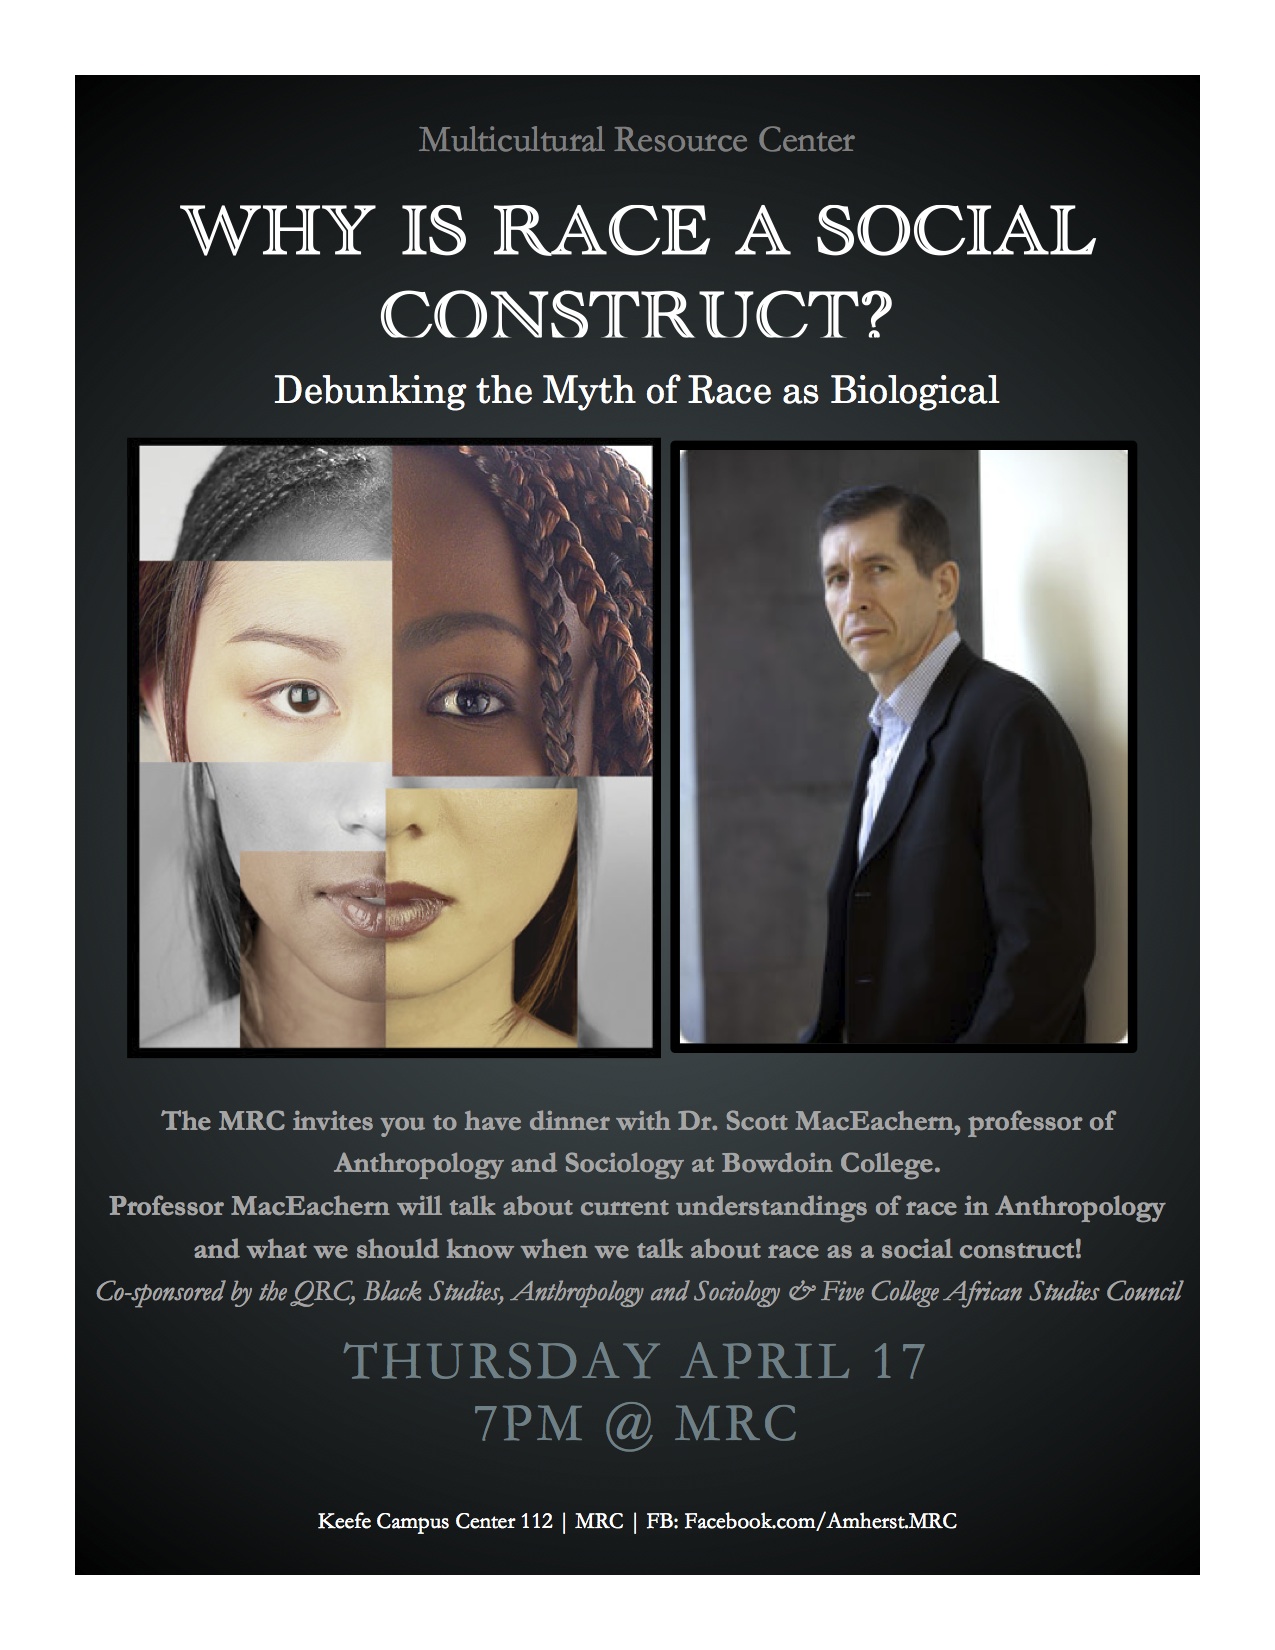 Race as a social construct » INAR